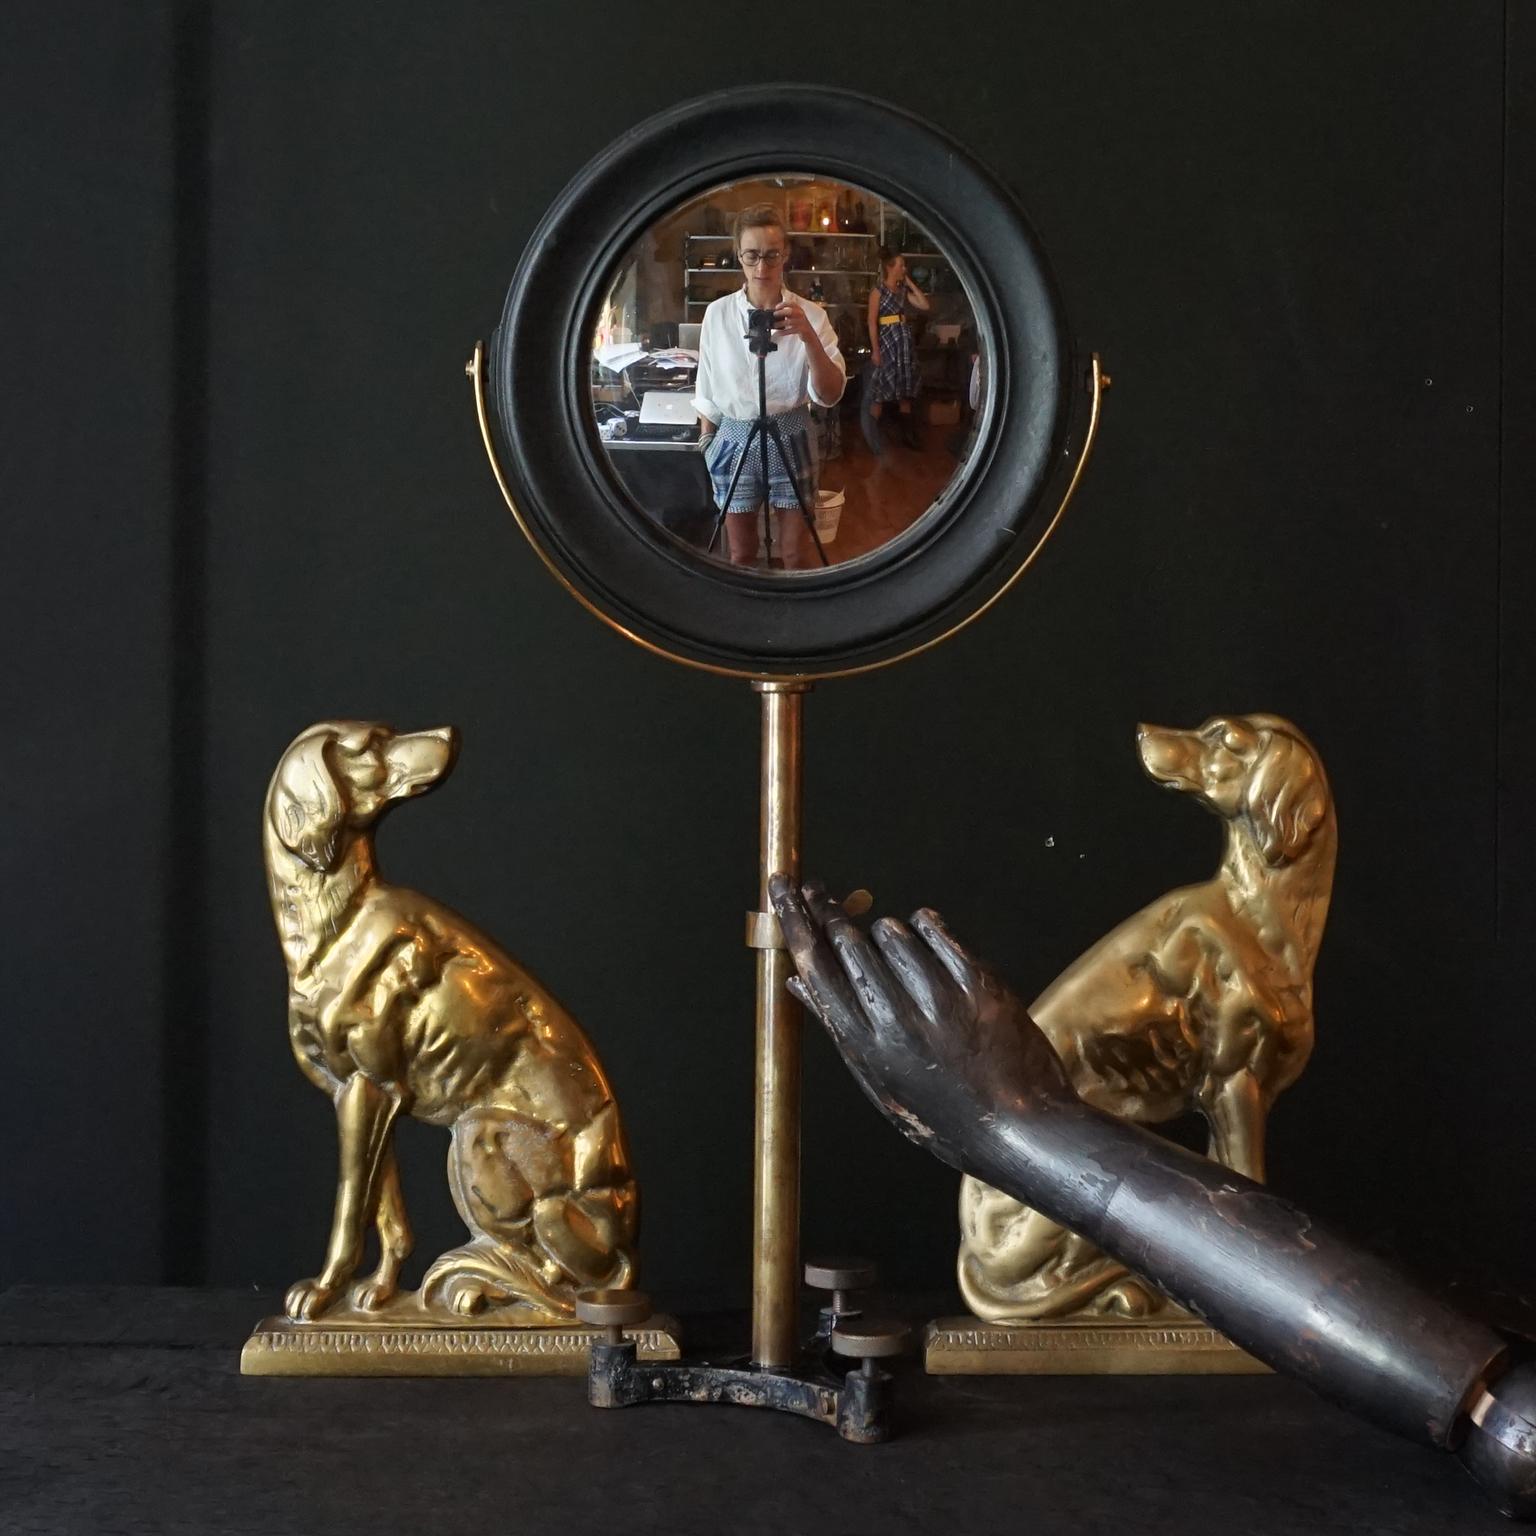 Un grand miroir optique scientifique du 19ème siècle dans un cadre rond en bois dur noirci sur un support tripode articulé en laiton. Le miroir a une forme concave ou convexe, mais si vous regardez de près, il est en fait plat, le reflet n'est